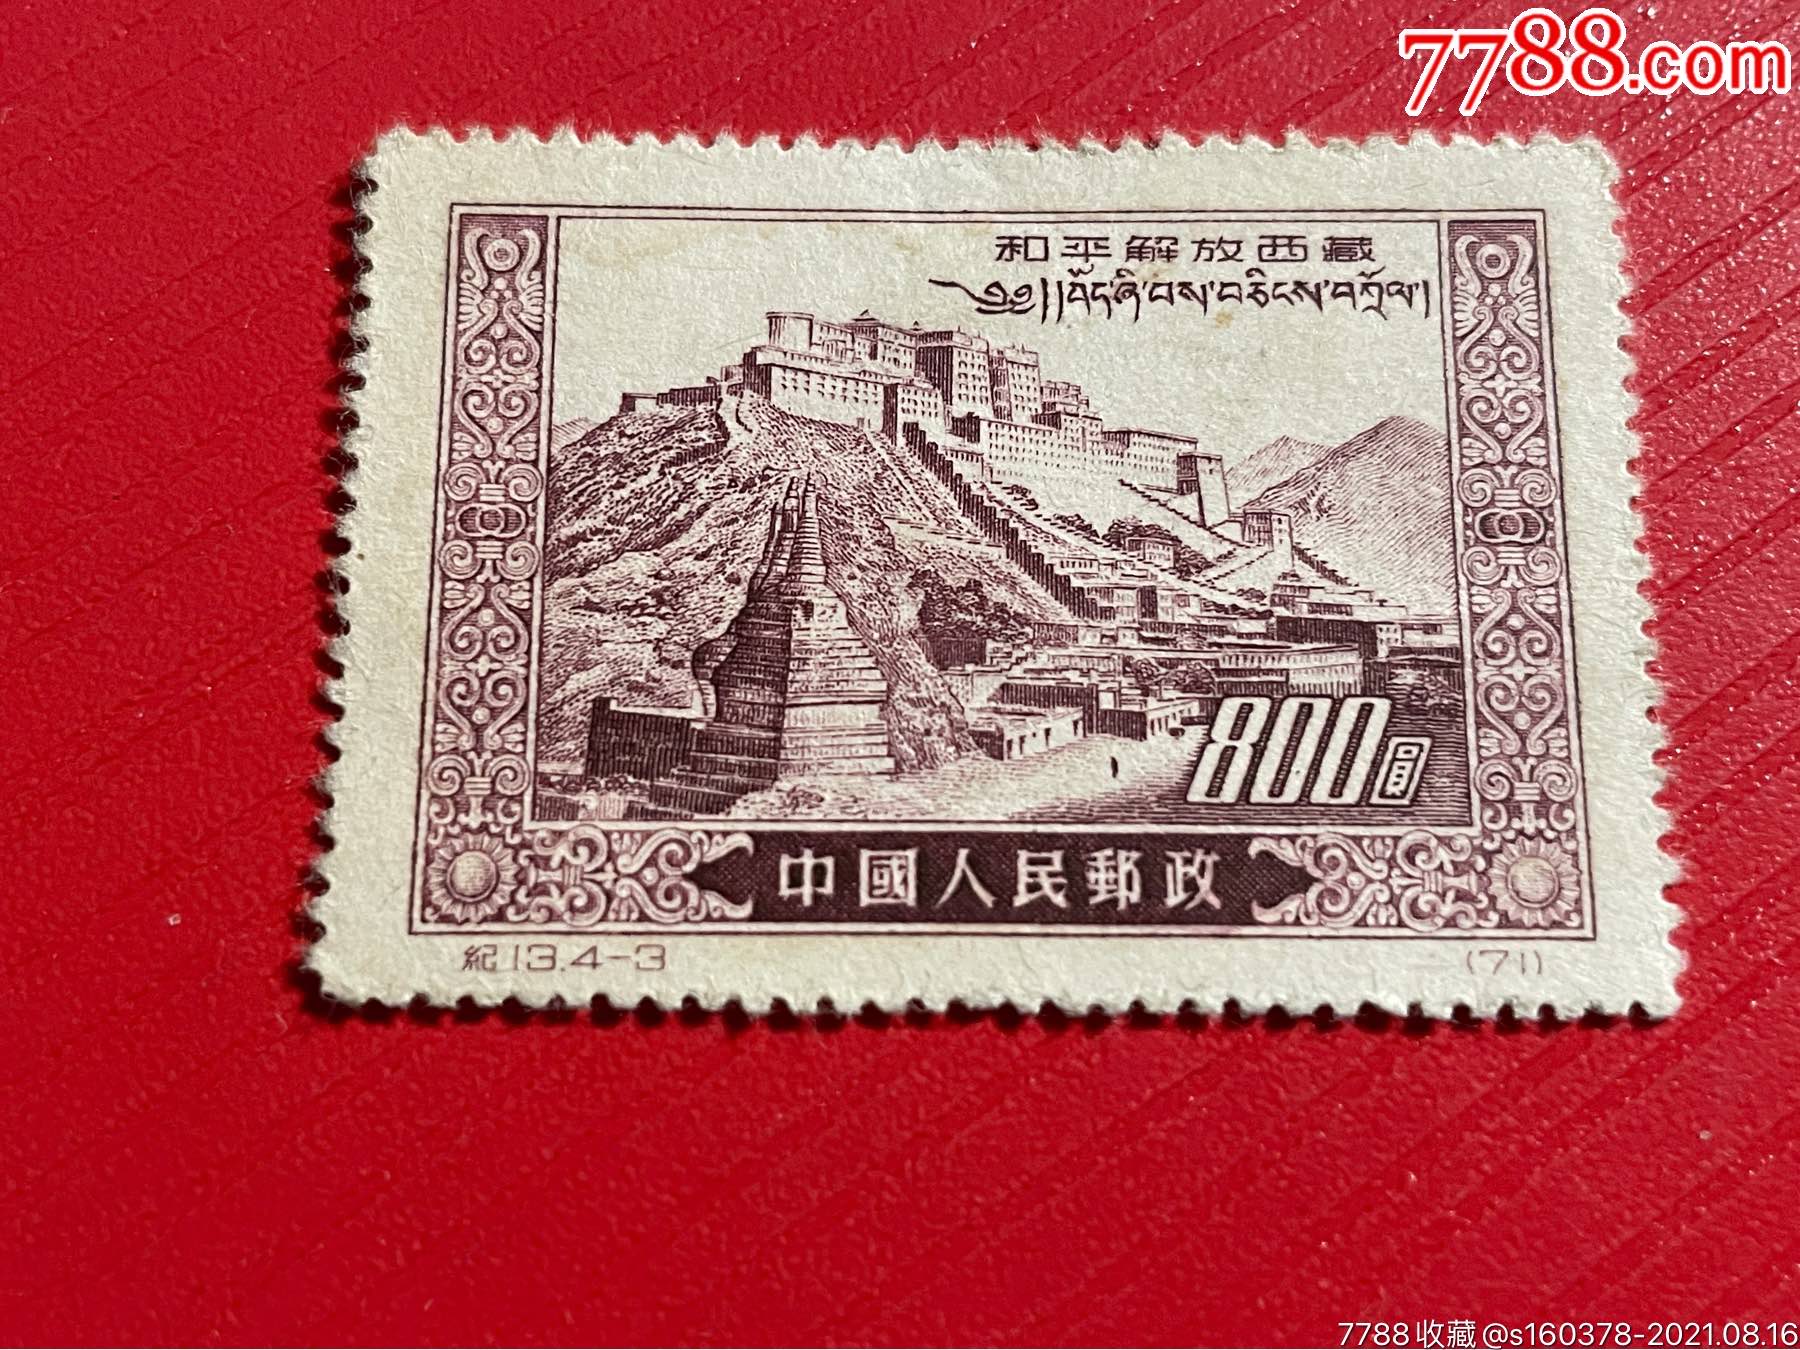 纪13和平解放西藏》邮票-价格:20元-se82058054-新中国邮票-零售-7788